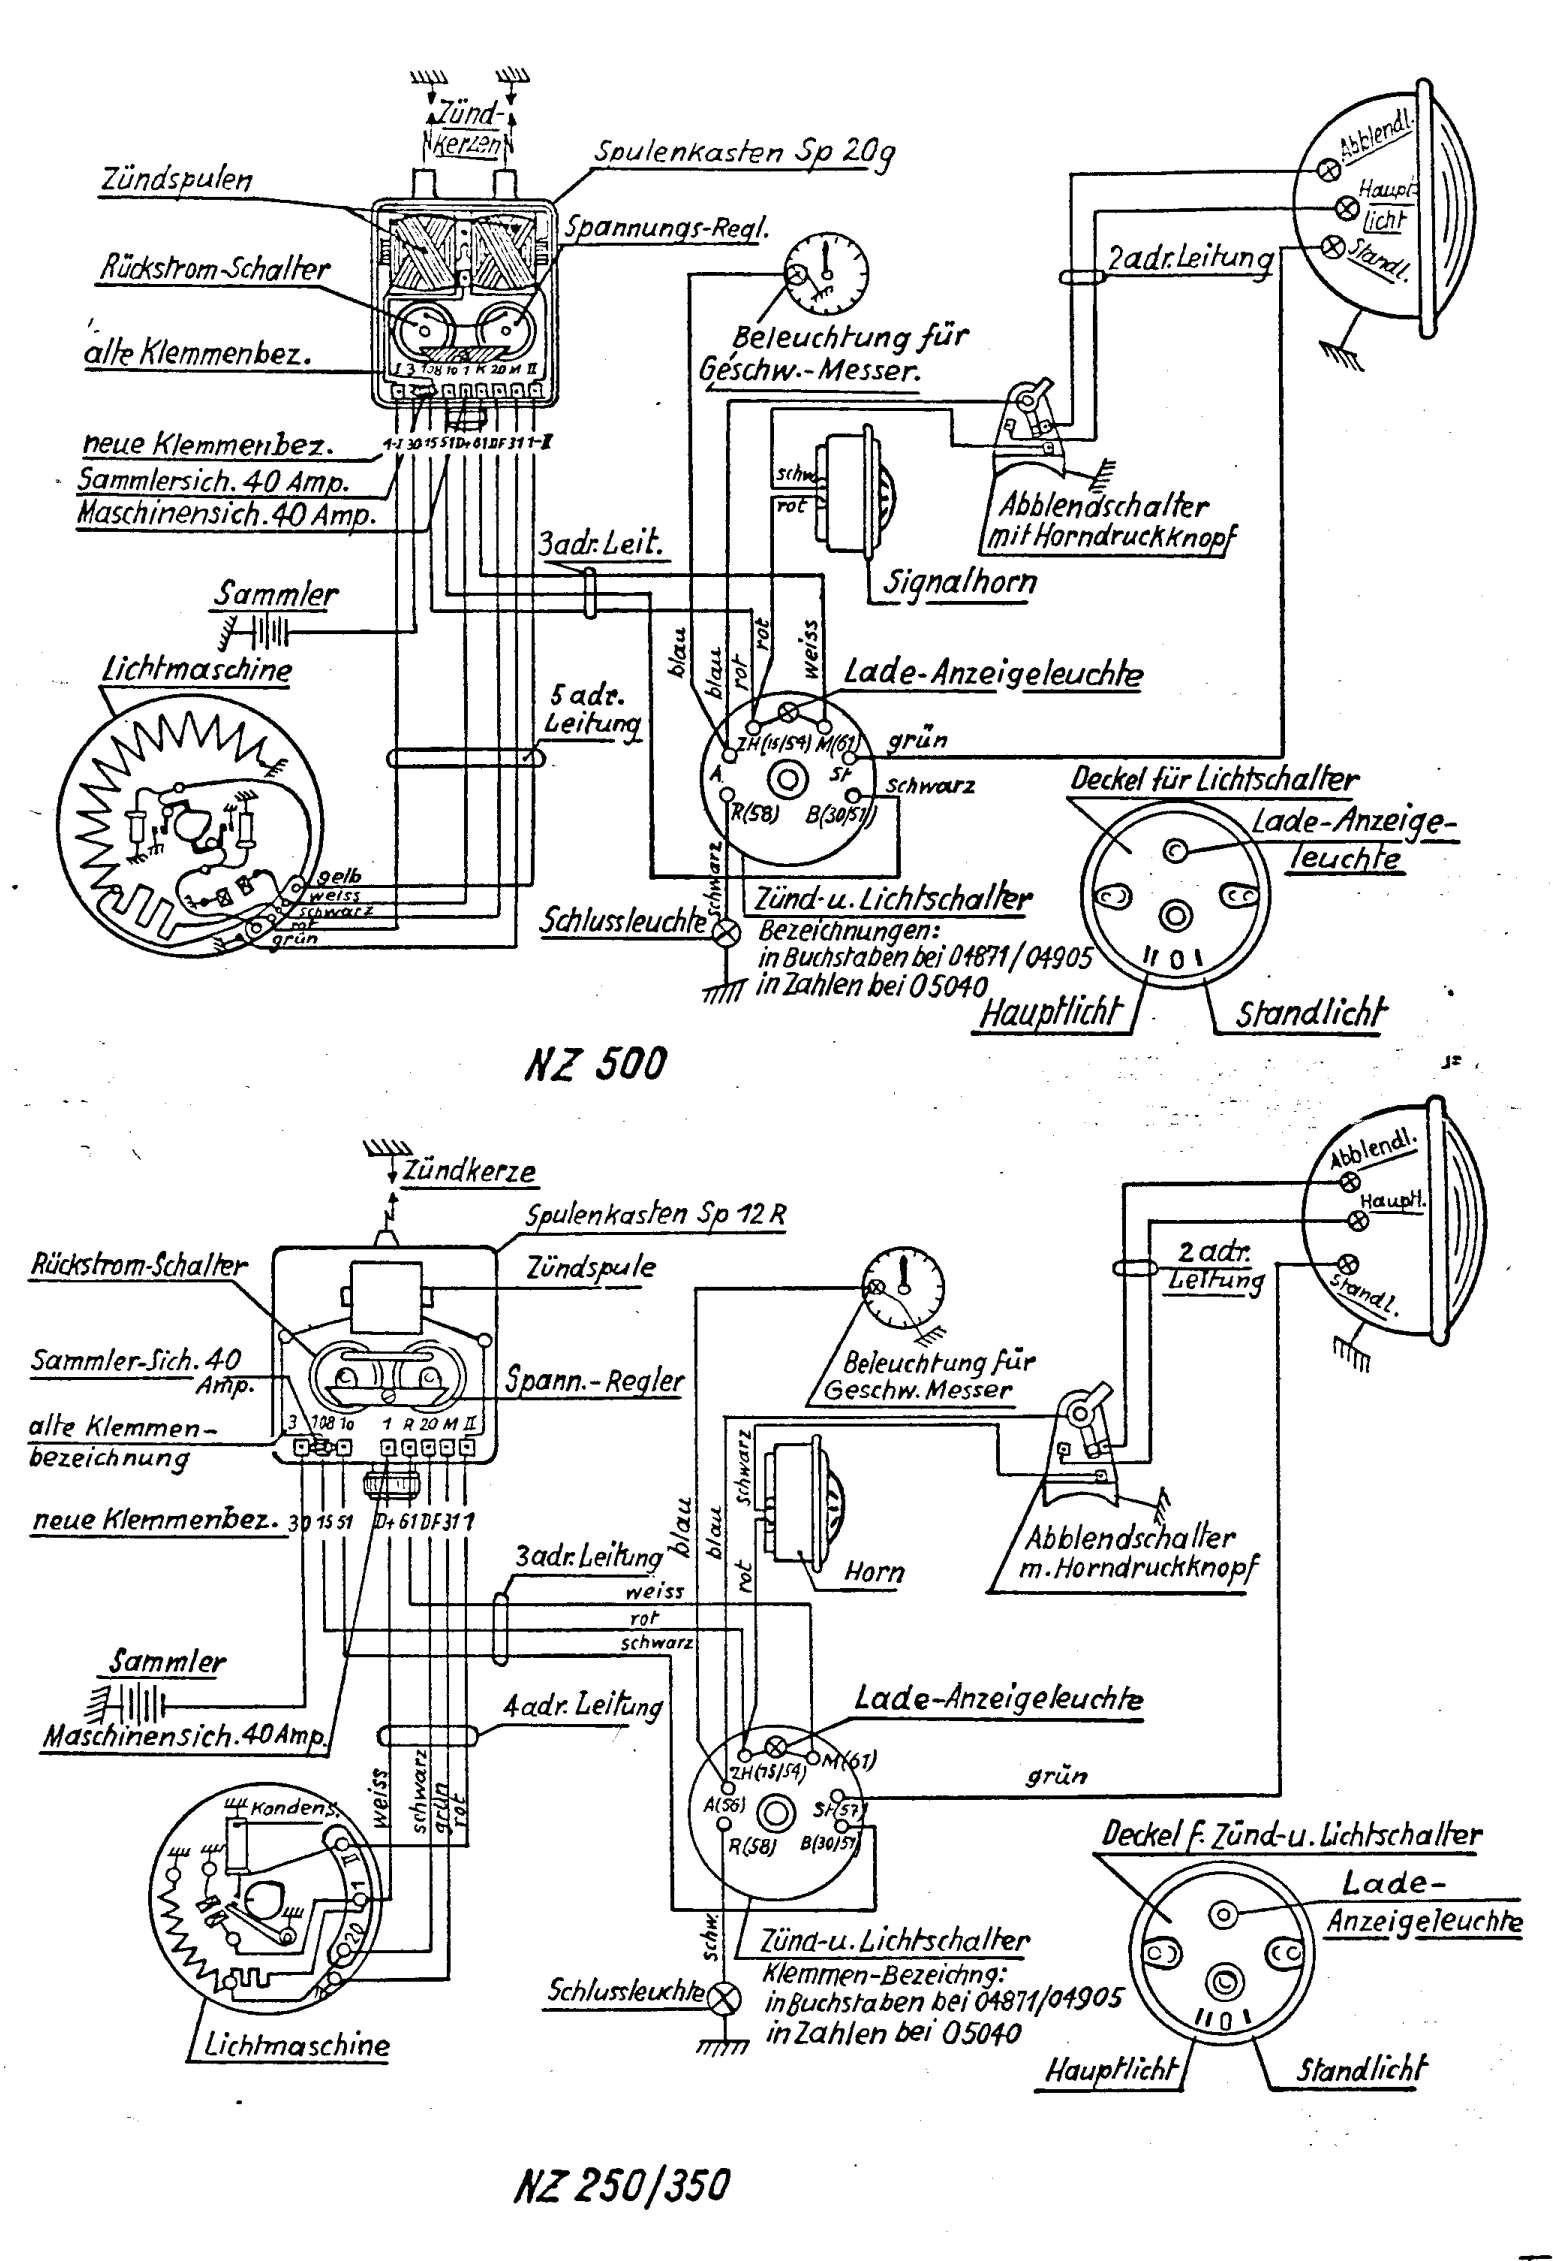 Motorcycle Wiring Diagram Dan S Motorcycle "various Wiring Systems and Diagrams" Of Motorcycle Wiring Diagram